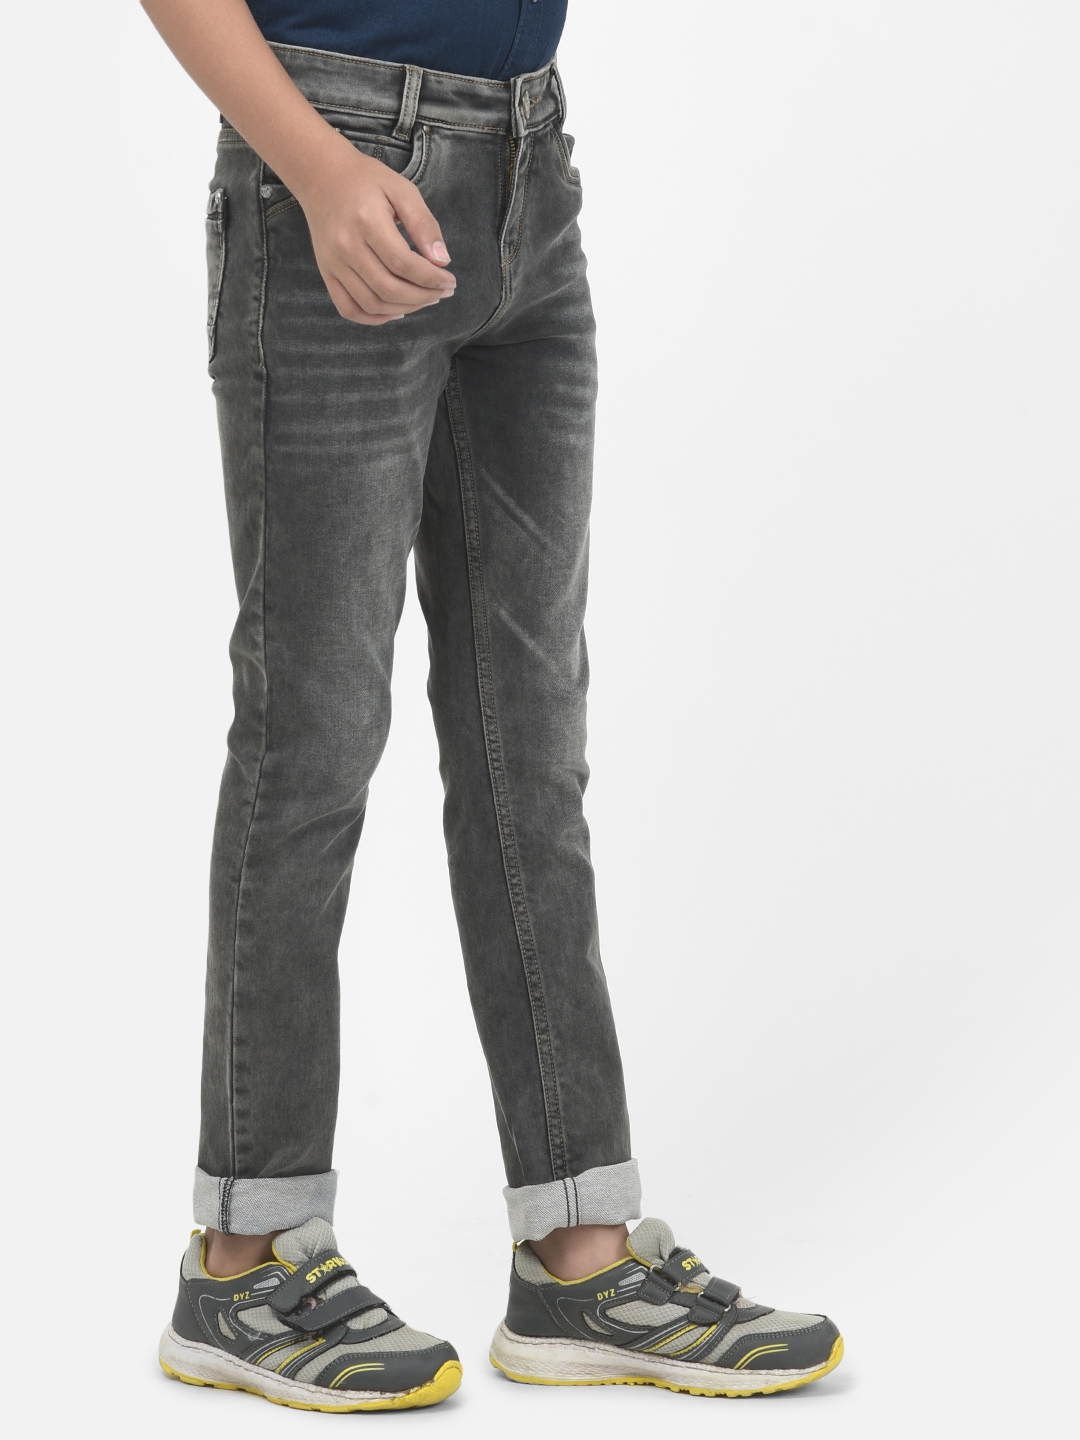 Crimsoune Club | Crimsoune Club Boy Grey Solid Light Fade Jeans 2